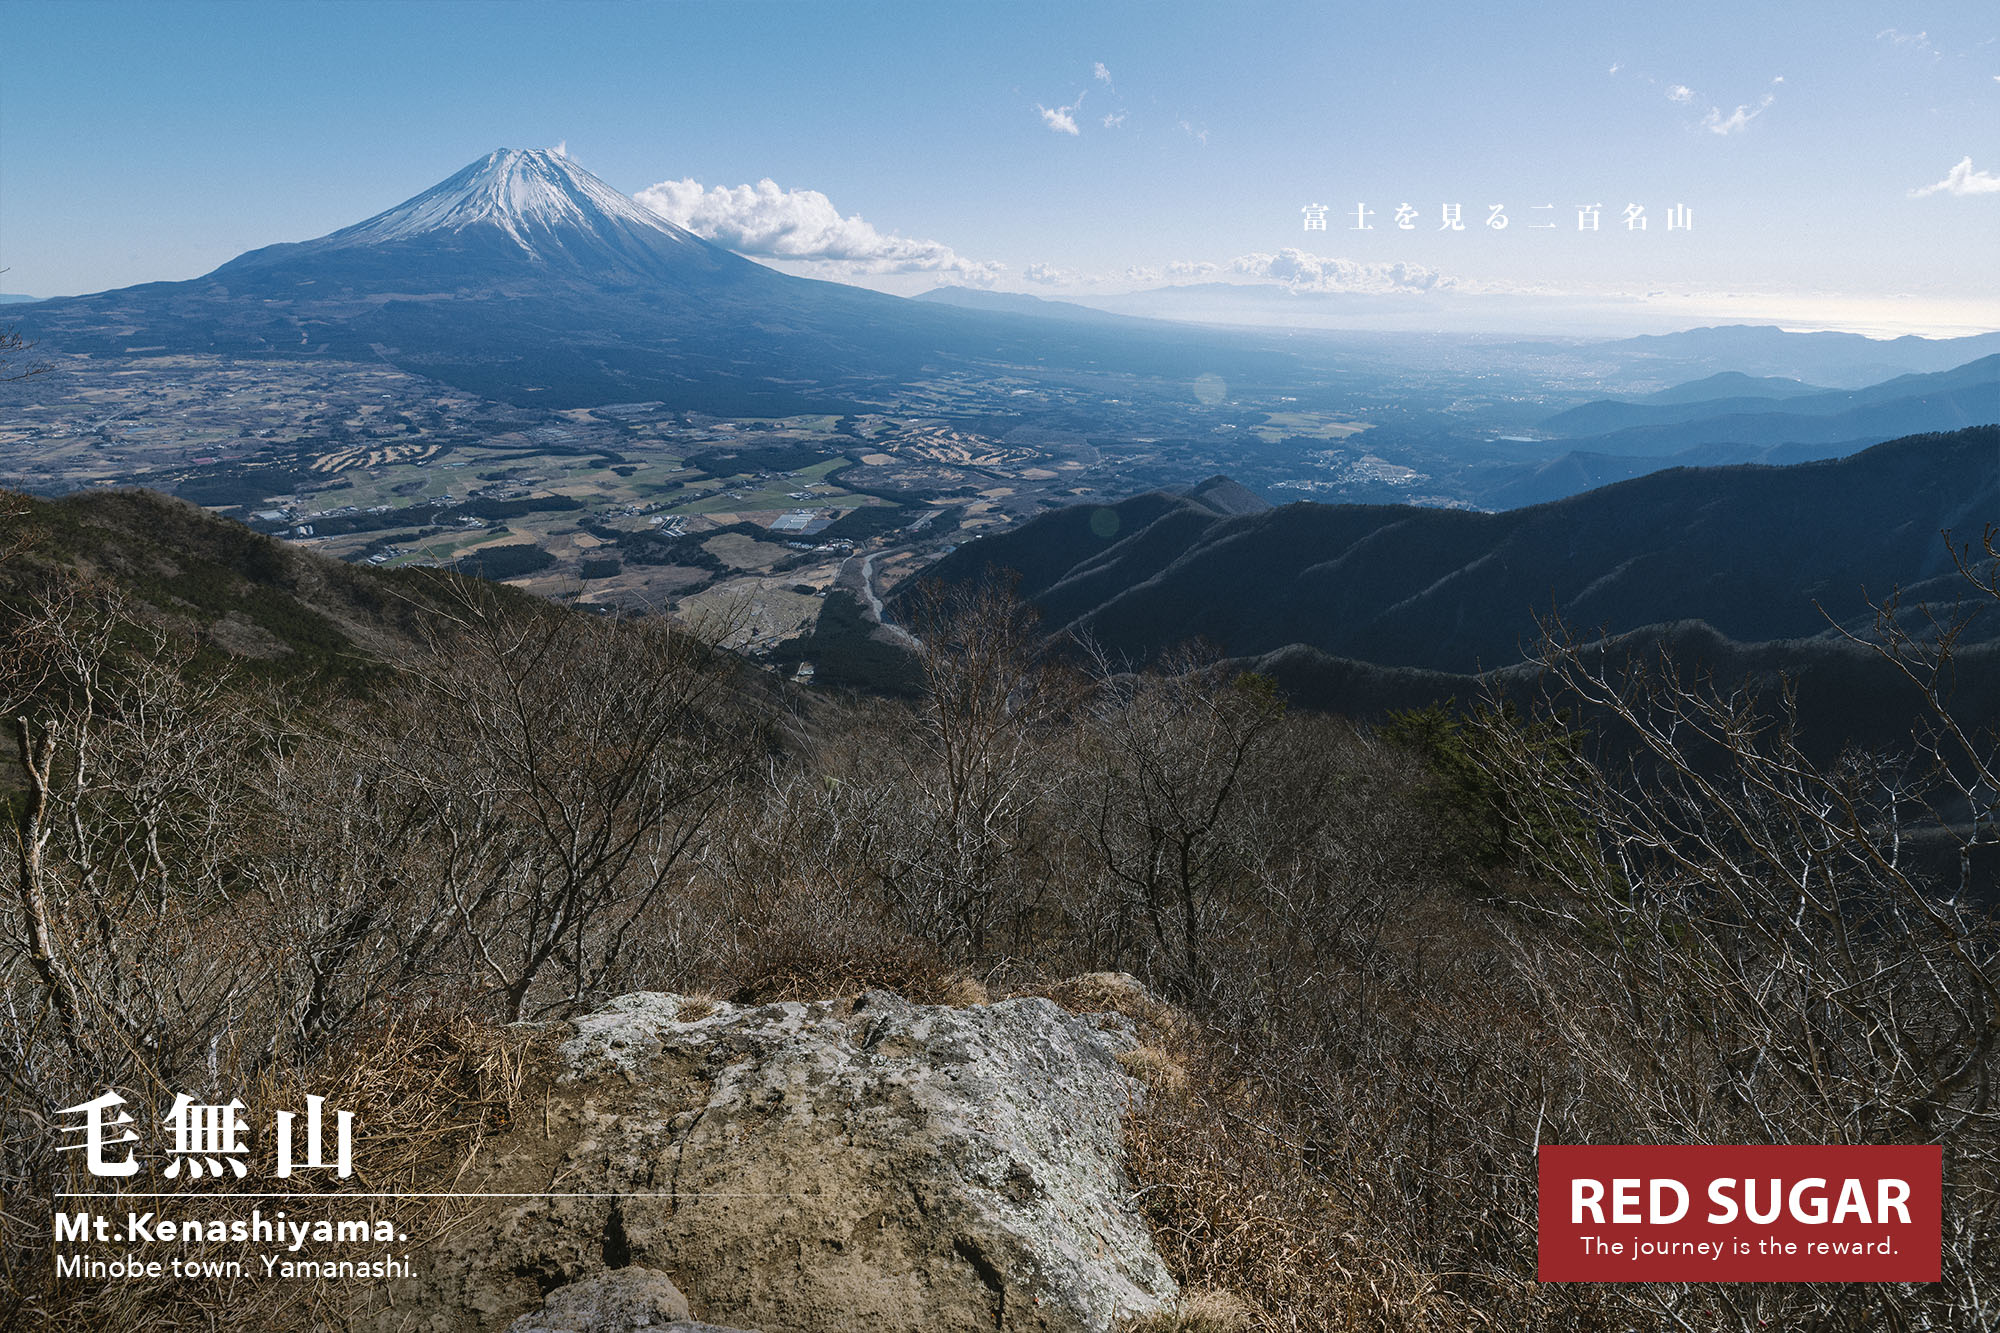 富士 石割山 青空広がる冬の富士 関東登山者にオススメする冬の富士見登山スポット Red Sugar